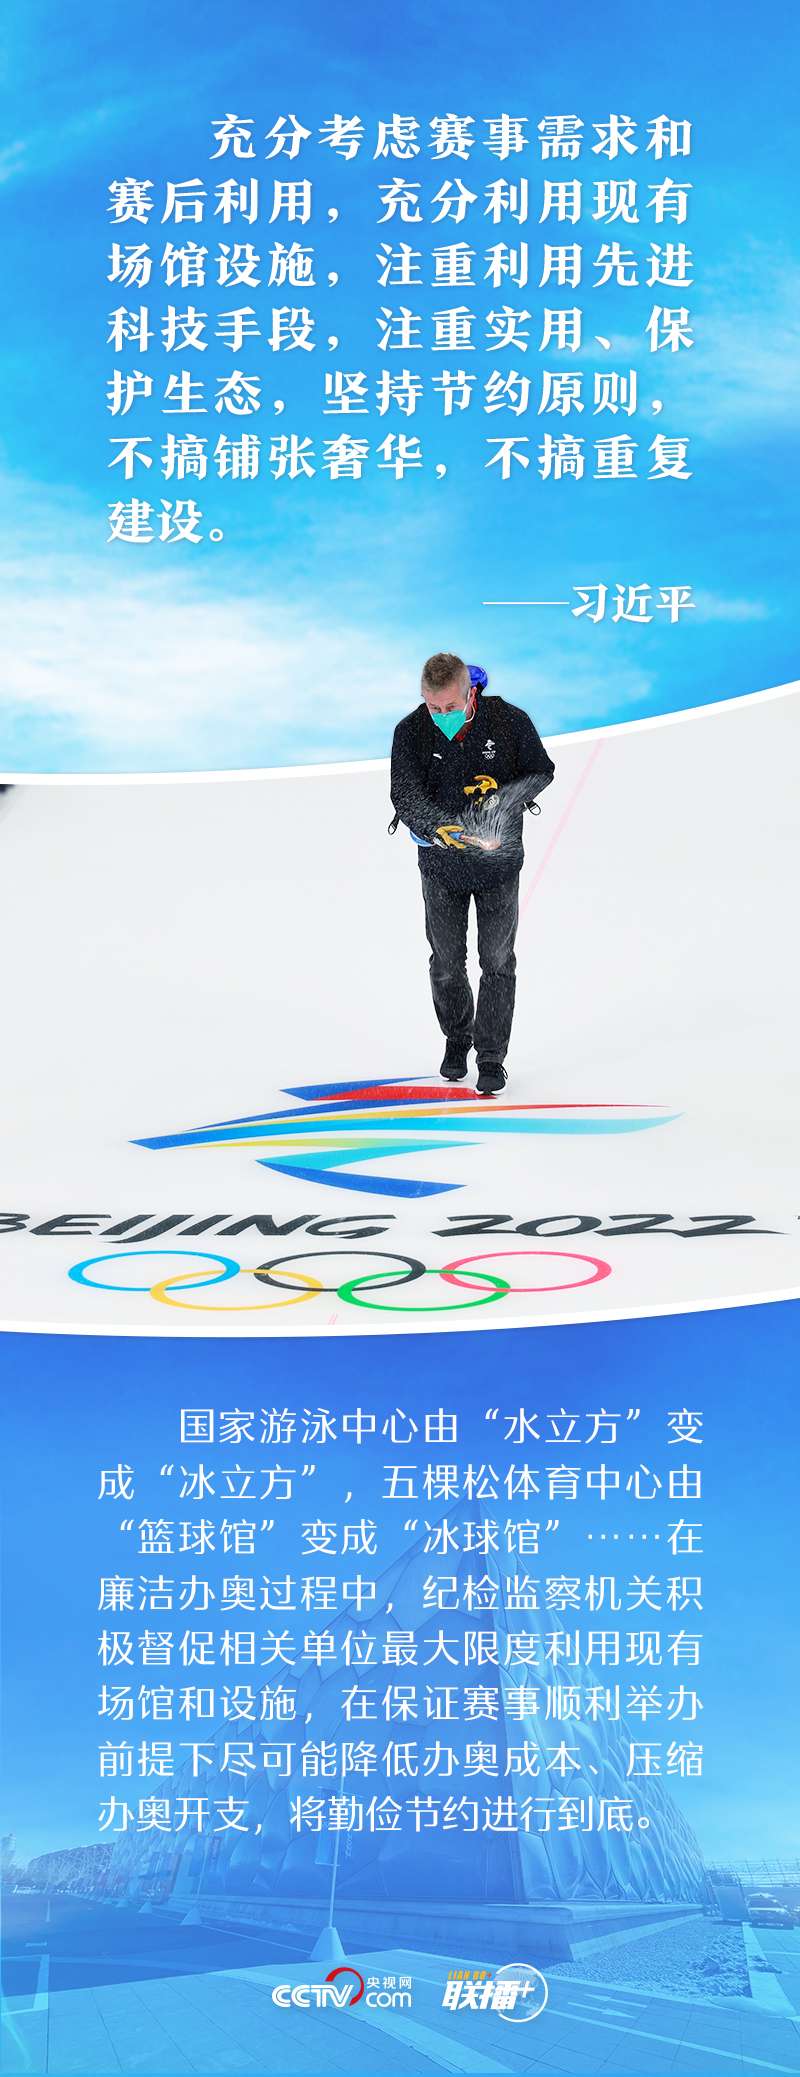 一起向未来｜打造奥运新标杆 跟着总书记共襄冬奥盛会